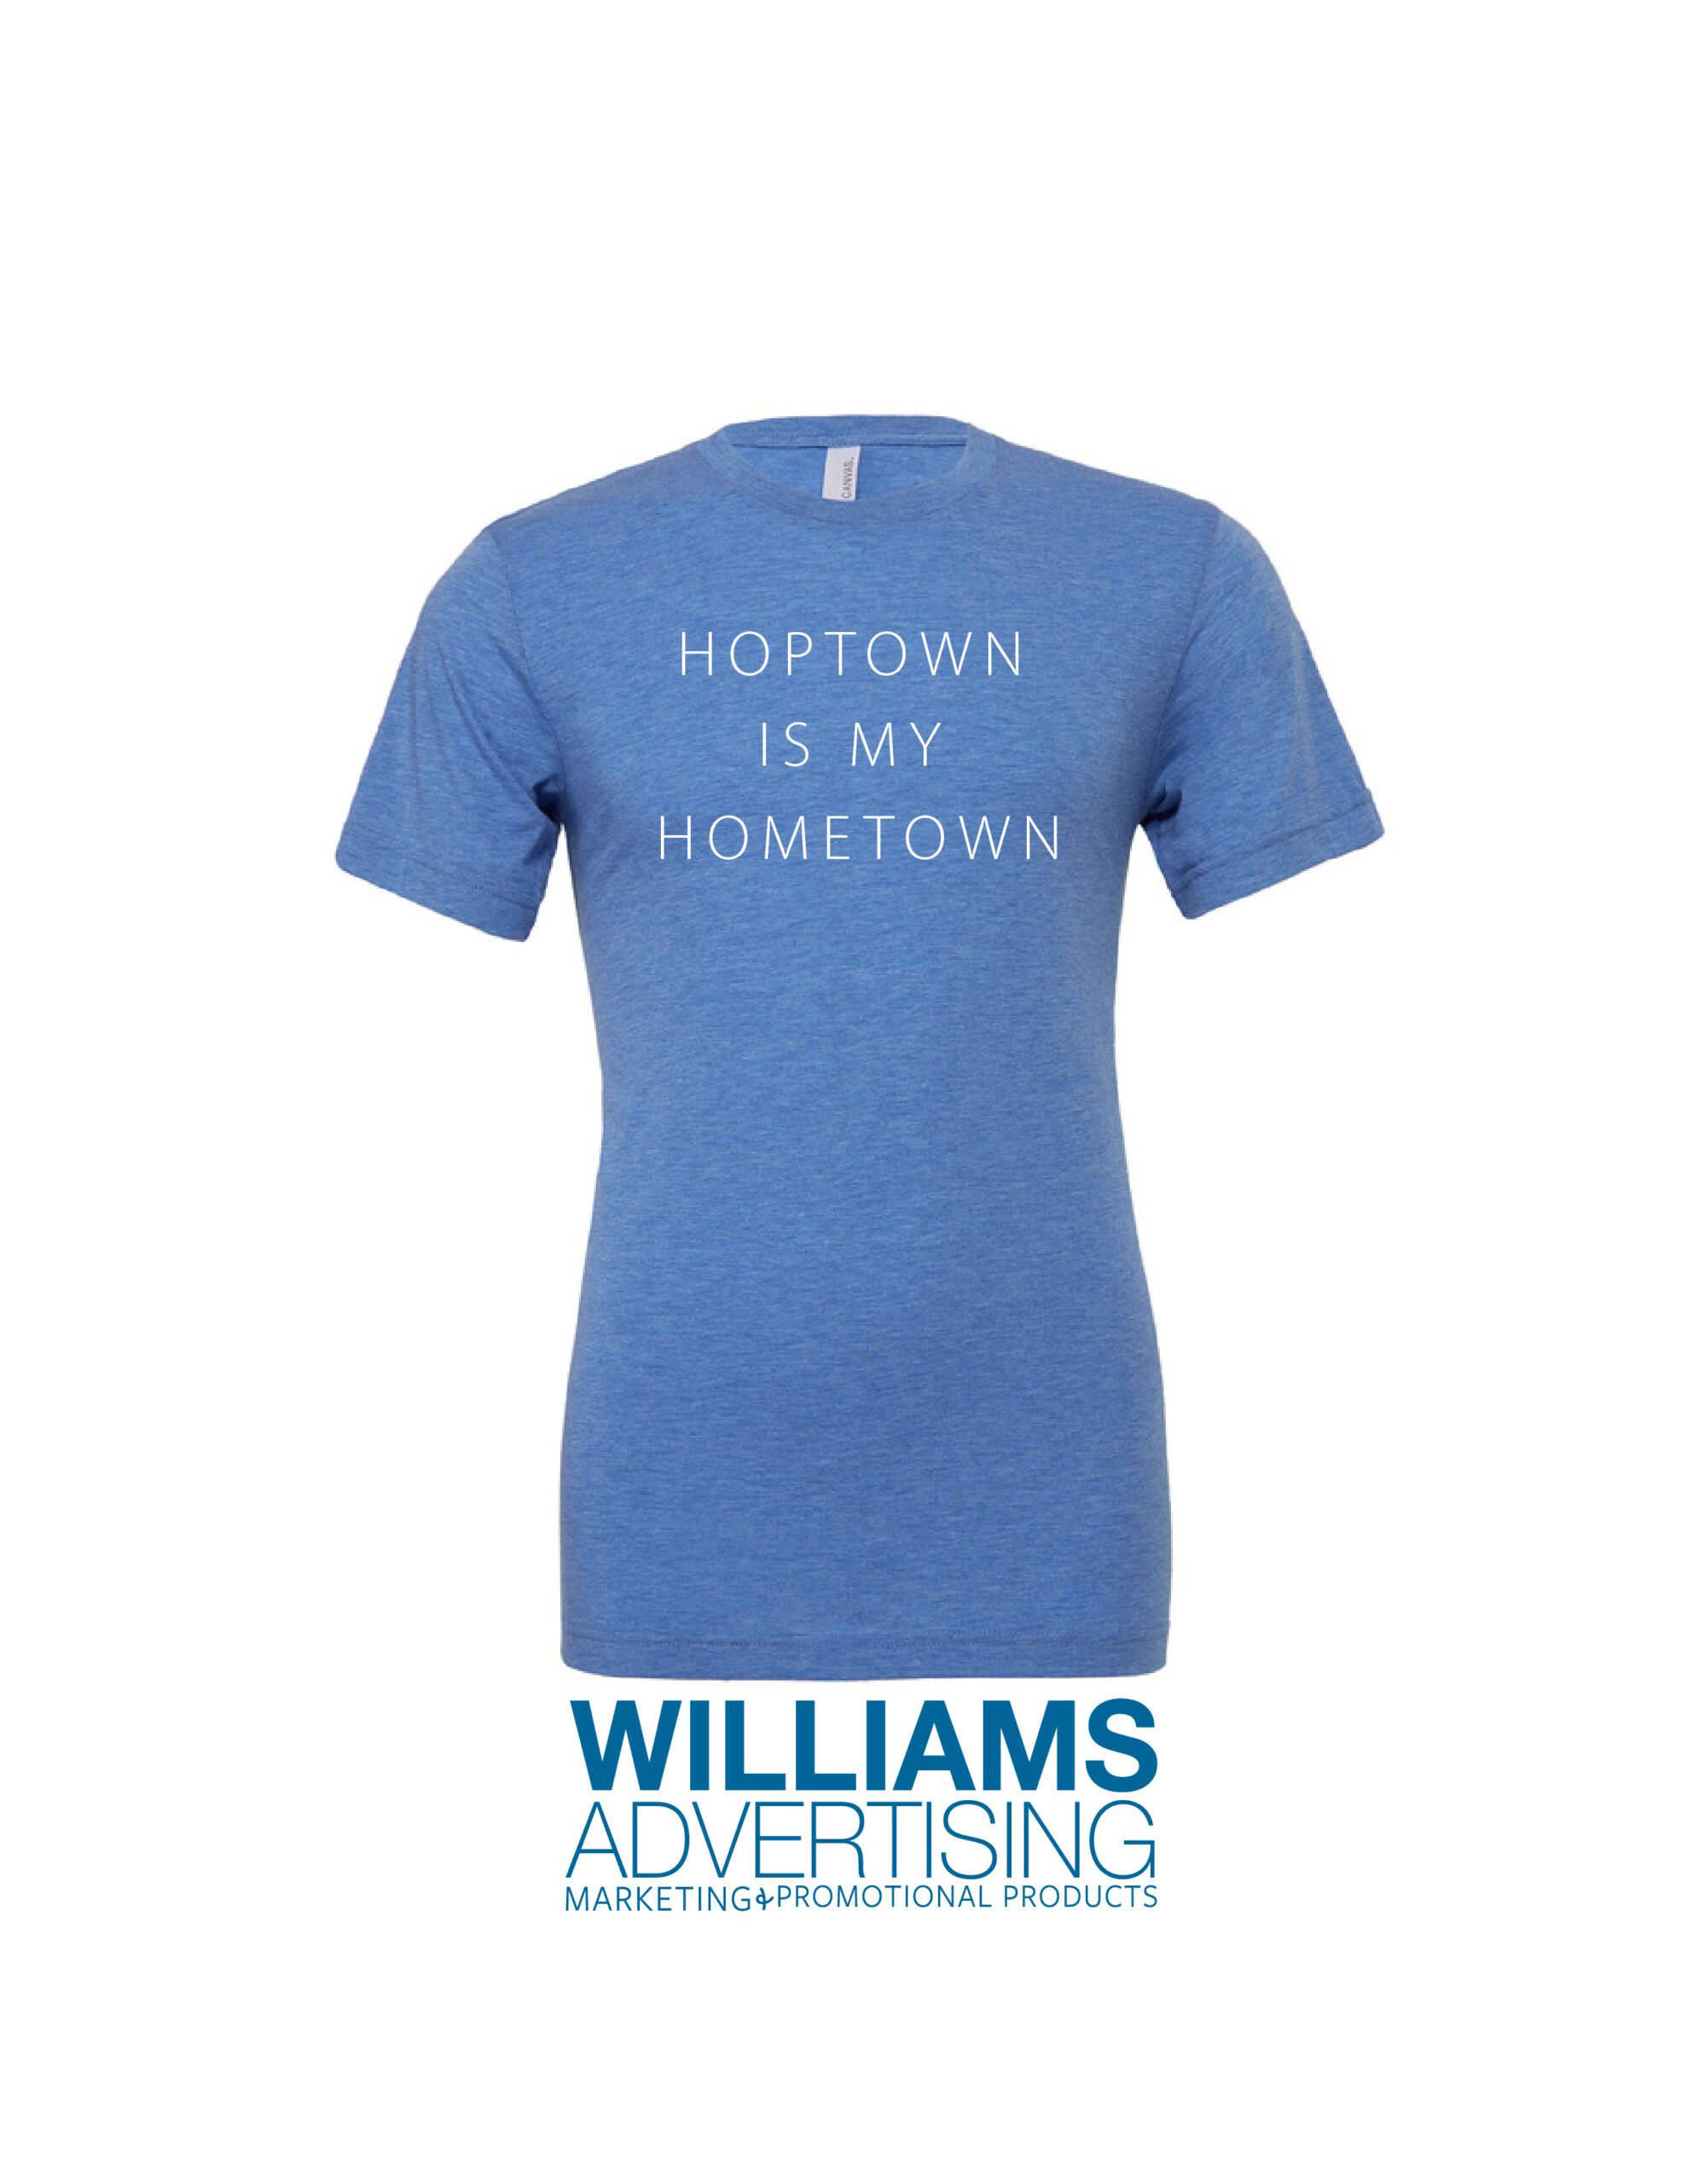 Hoptown is my Hometown